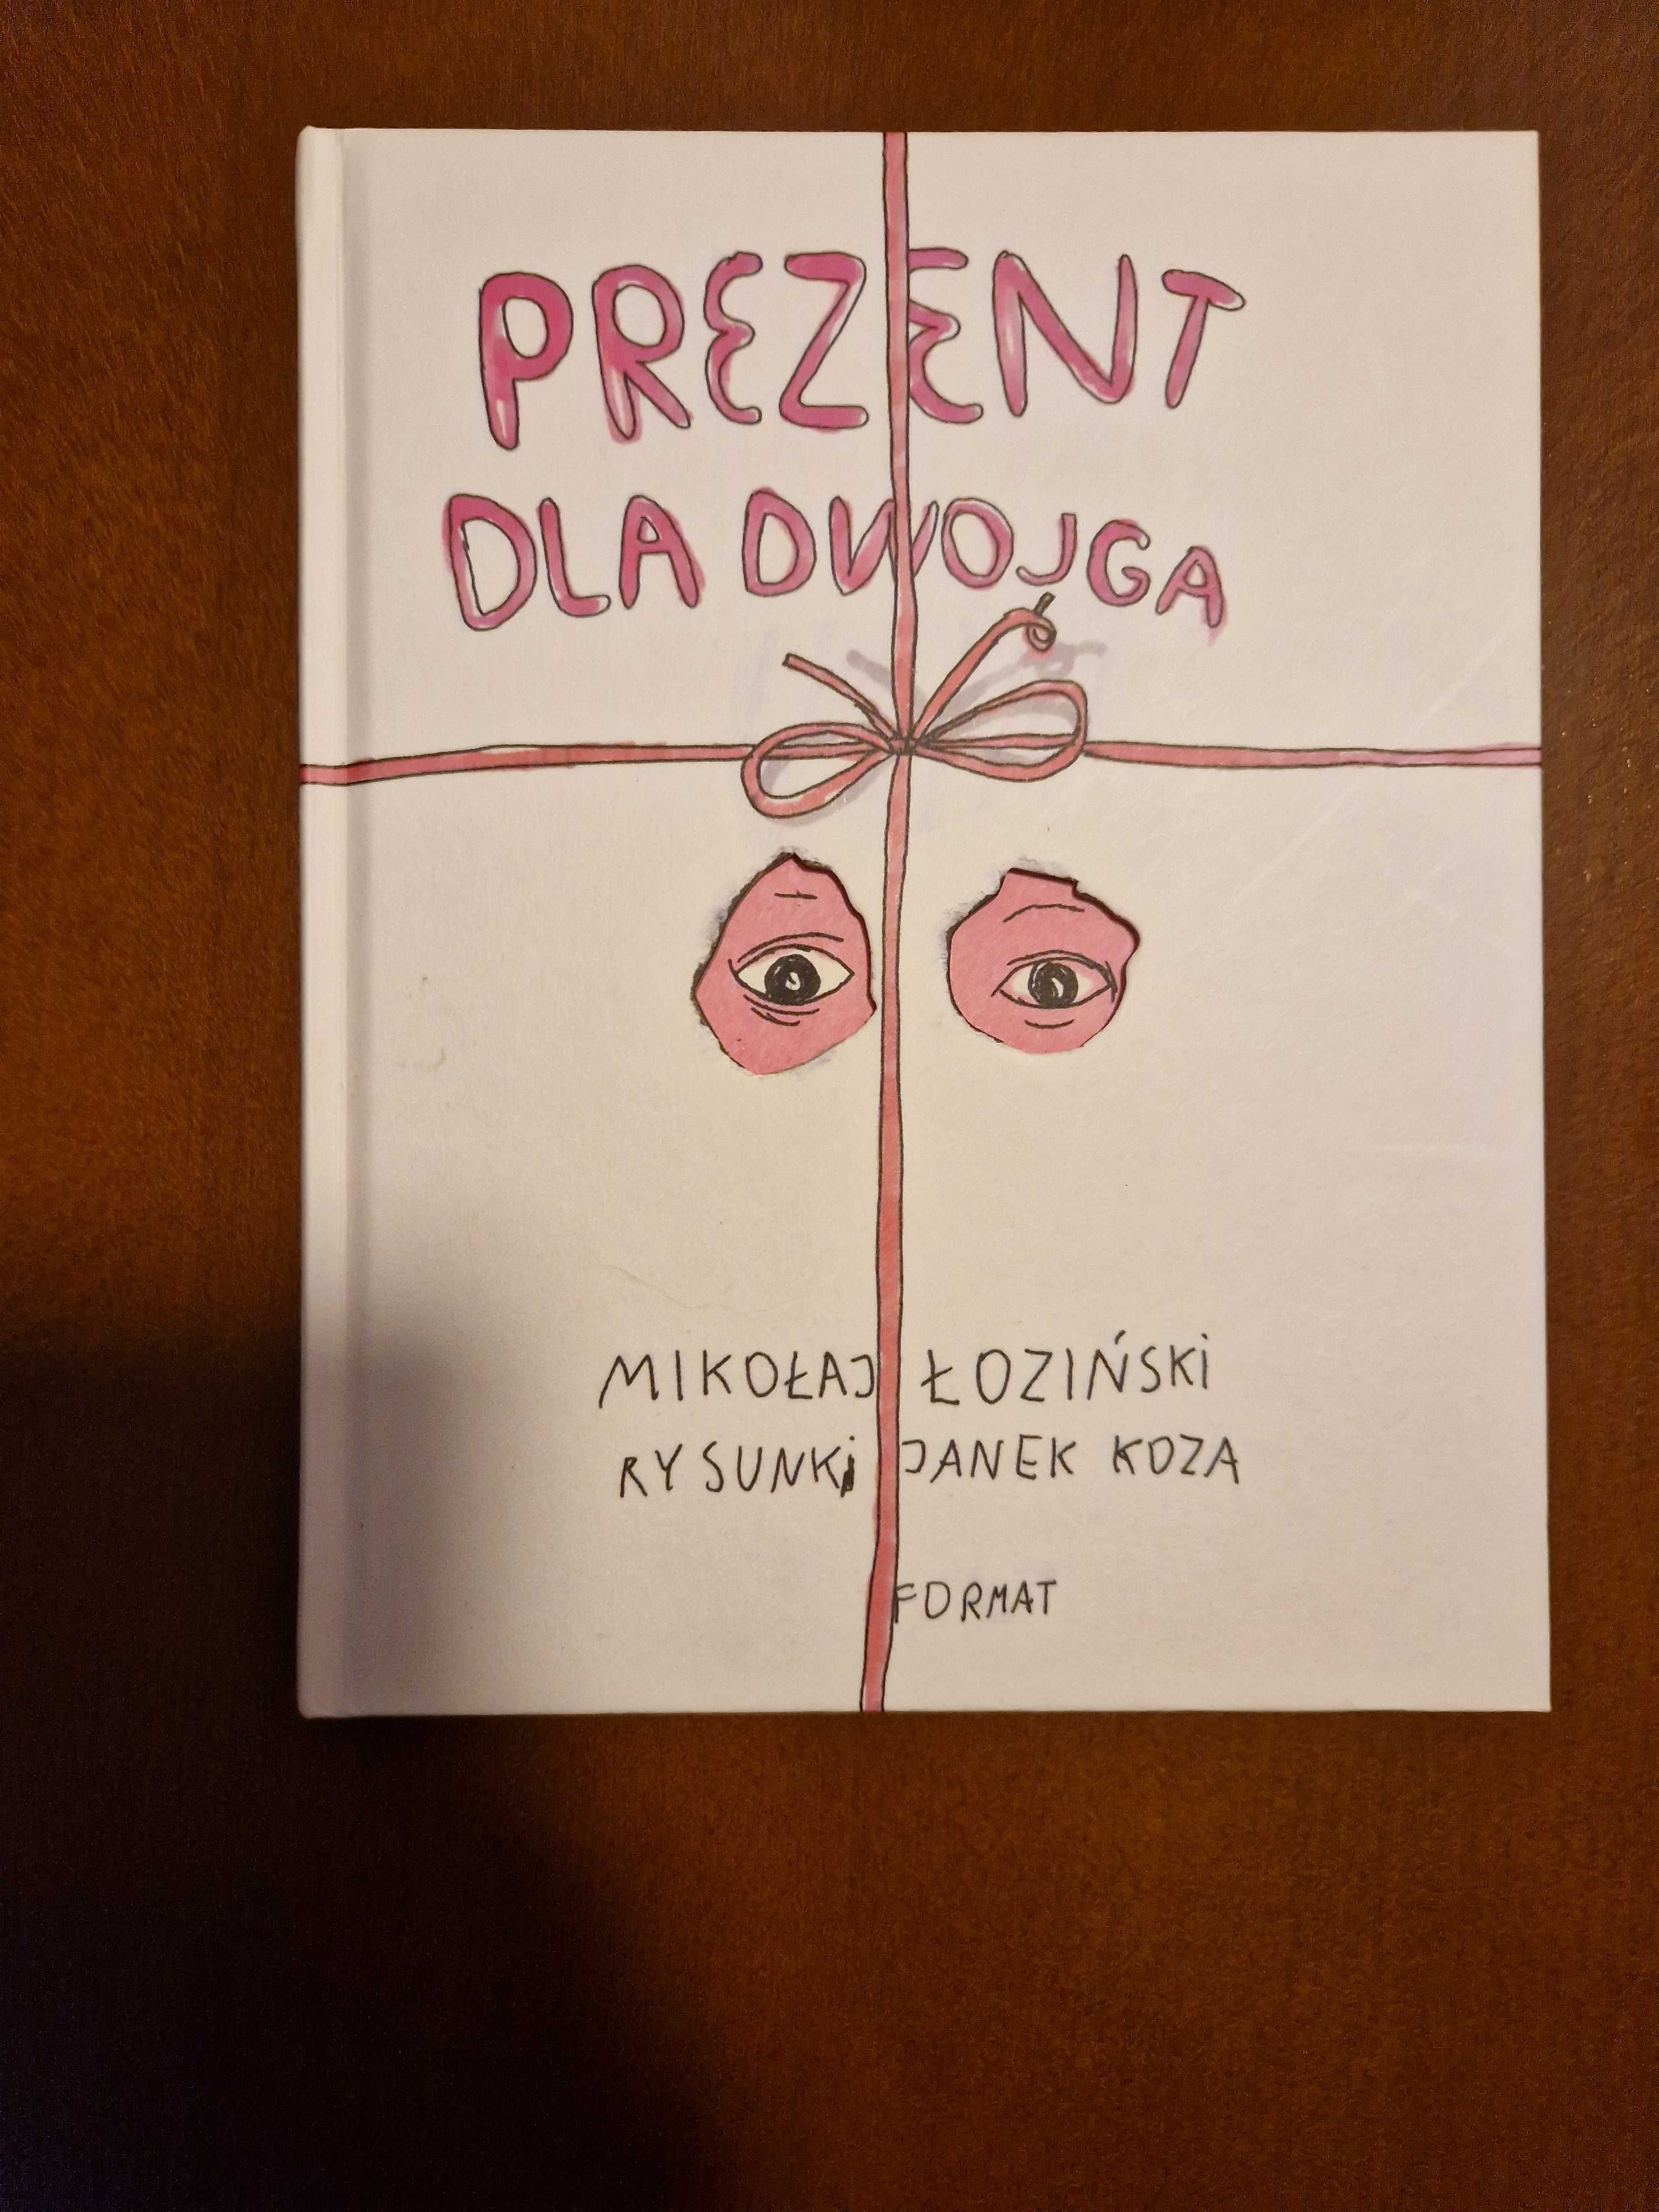 Prezent dla dwojga Mikołaj Łoziński Janek Koza Format